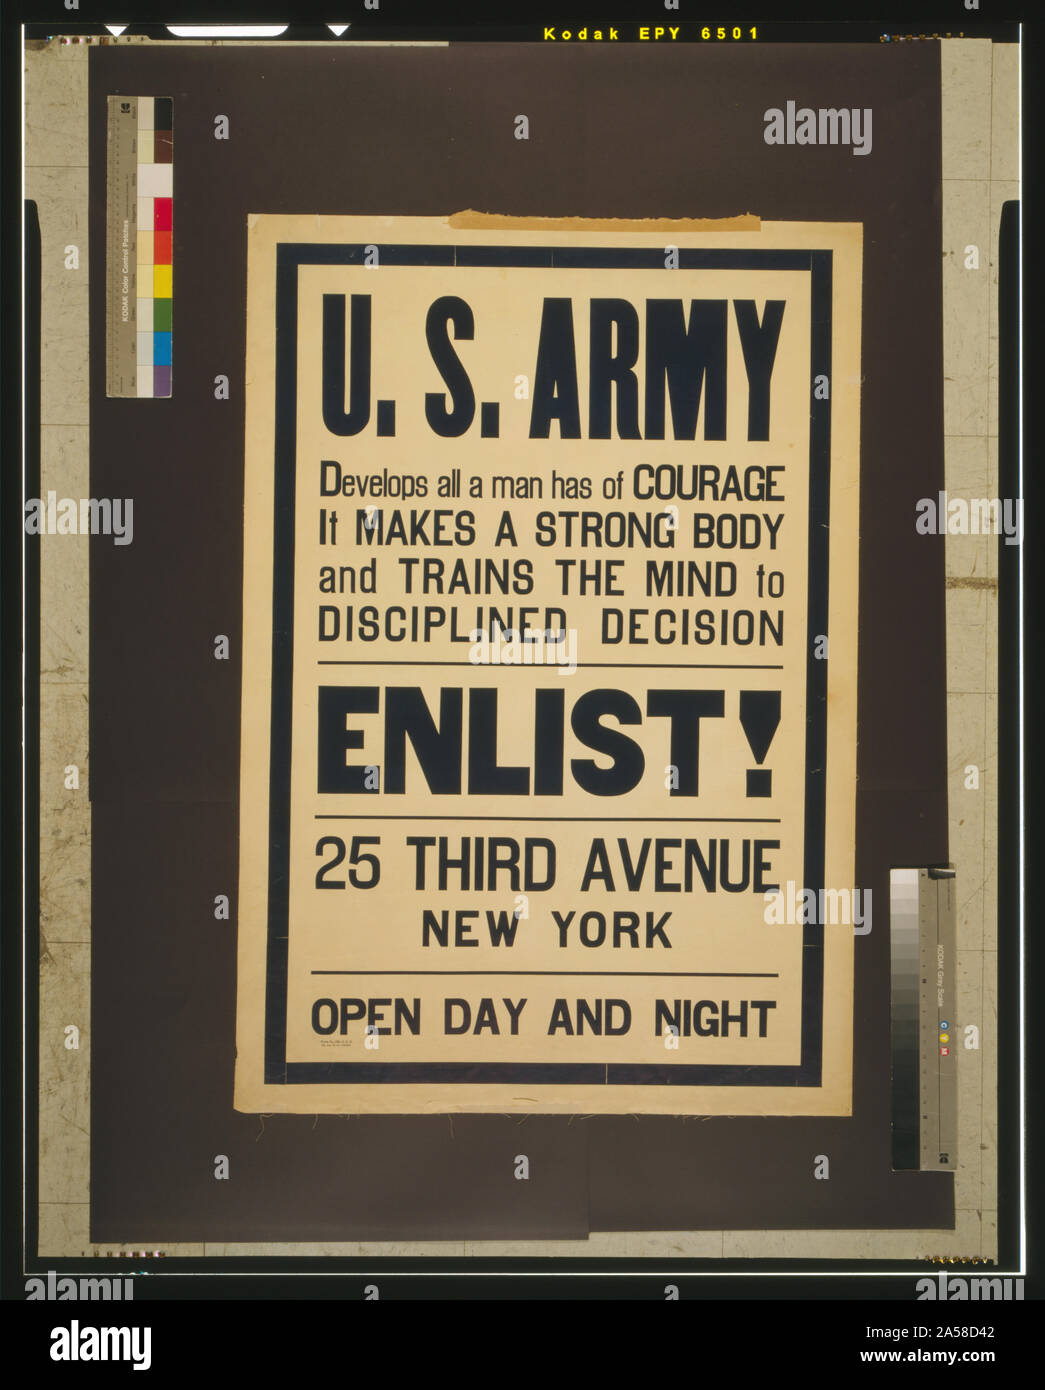 L'Armée américaine développe tout un homme a du courage - c'est un corps solide et forme l'esprit de décision discipliné de l'armée américaine Résumé : L'affiche de recrutement. Banque D'Images